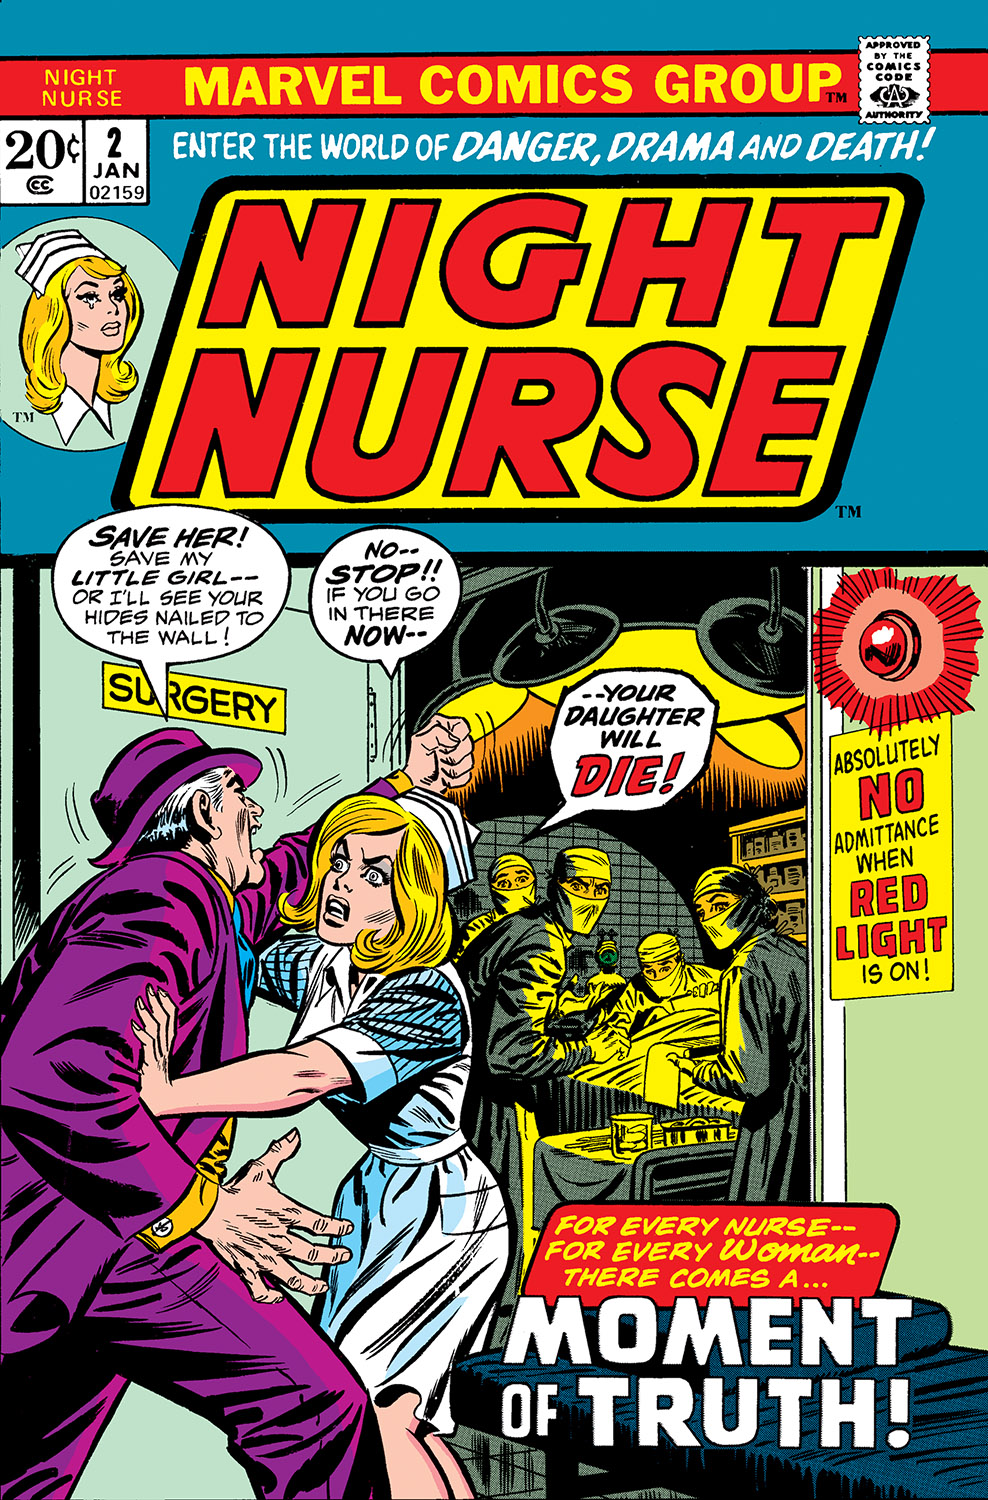 Night Nurse 1972 2 Comic Issues Marvel